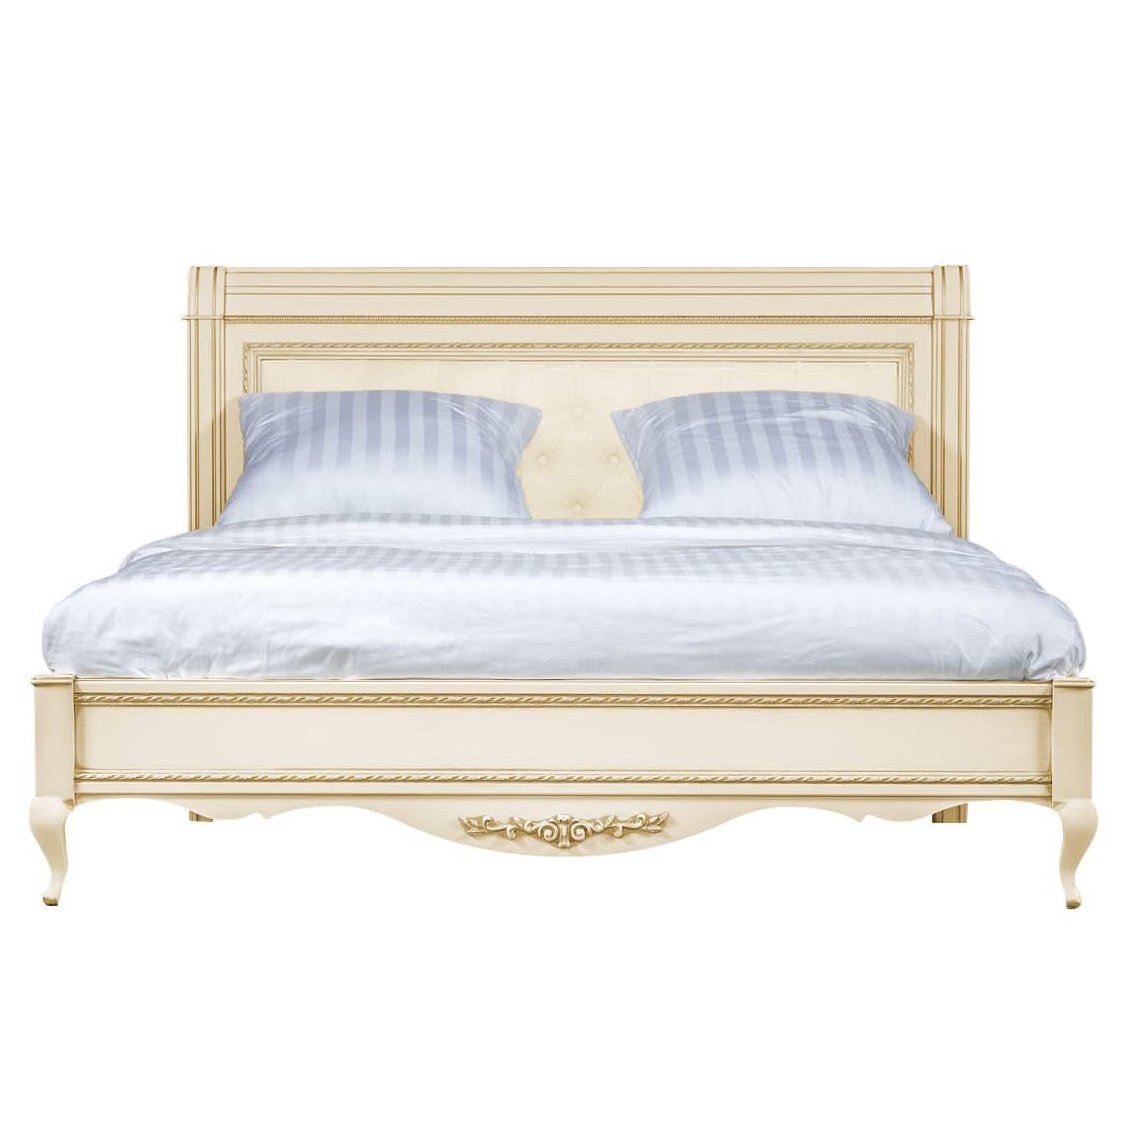 Кровать Timber Неаполь, двуспальная с мягким изголовьем 160x200 см цвет: ваниль с золотом (T-520)T-520